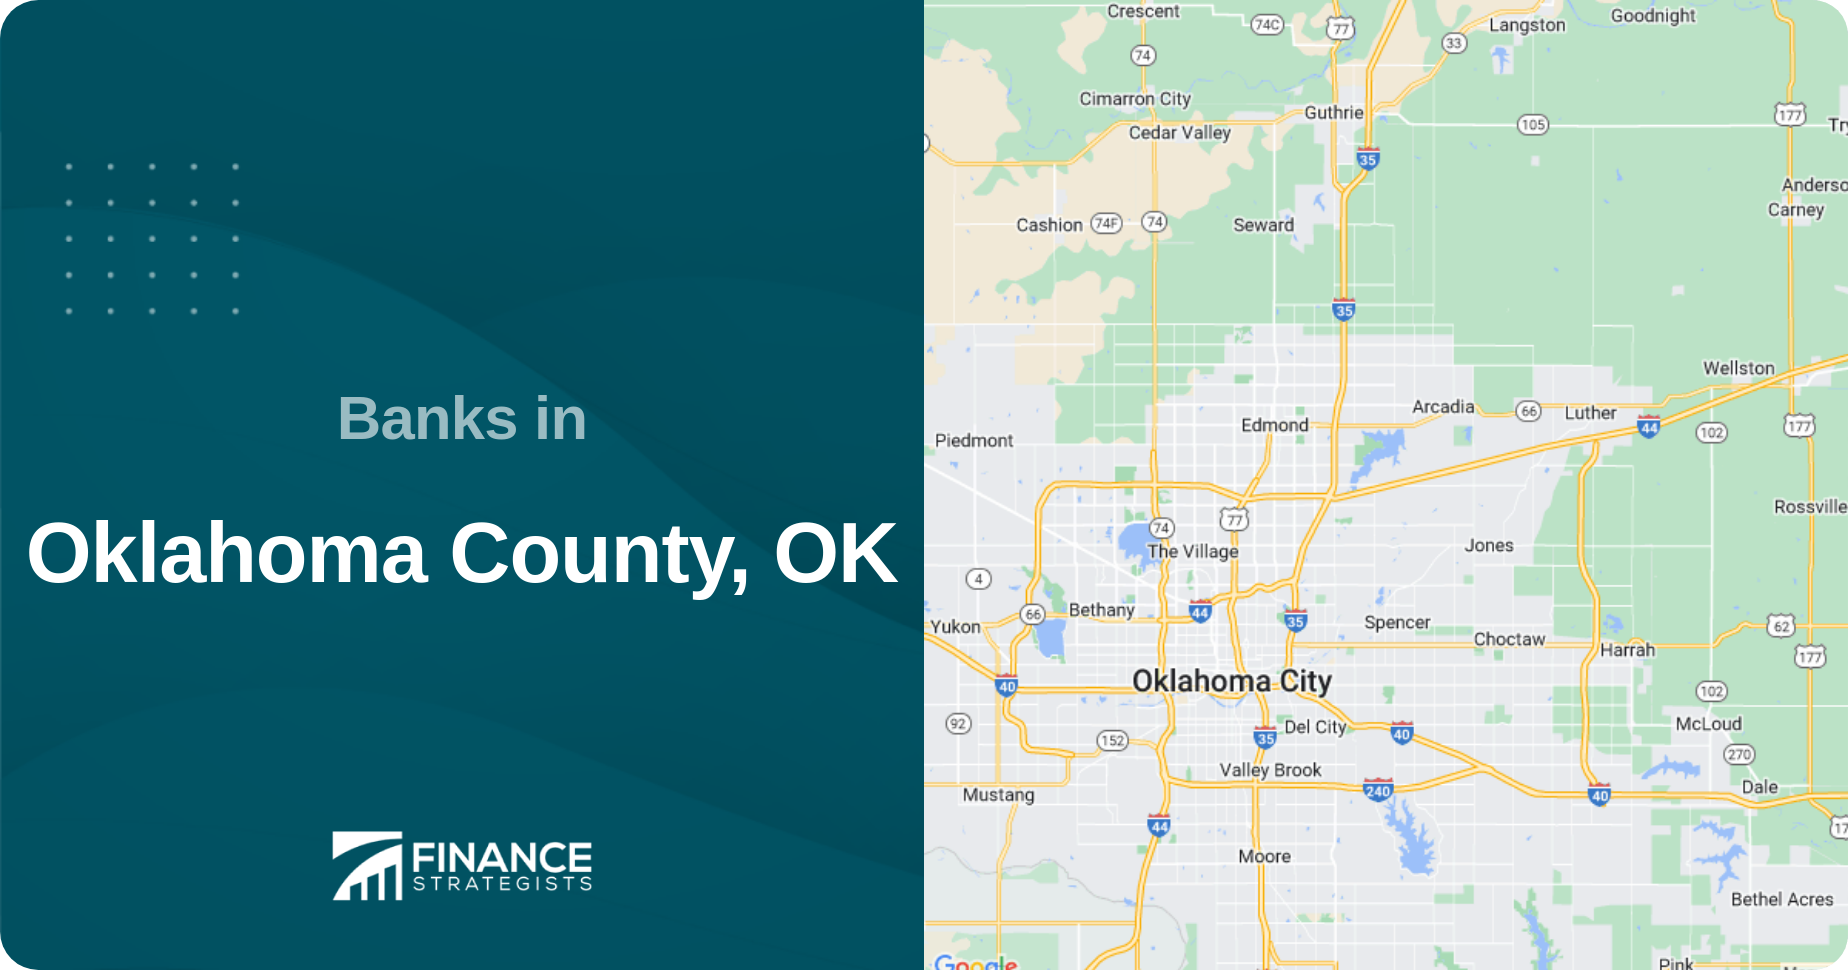 Banks in Oklahoma County, OK